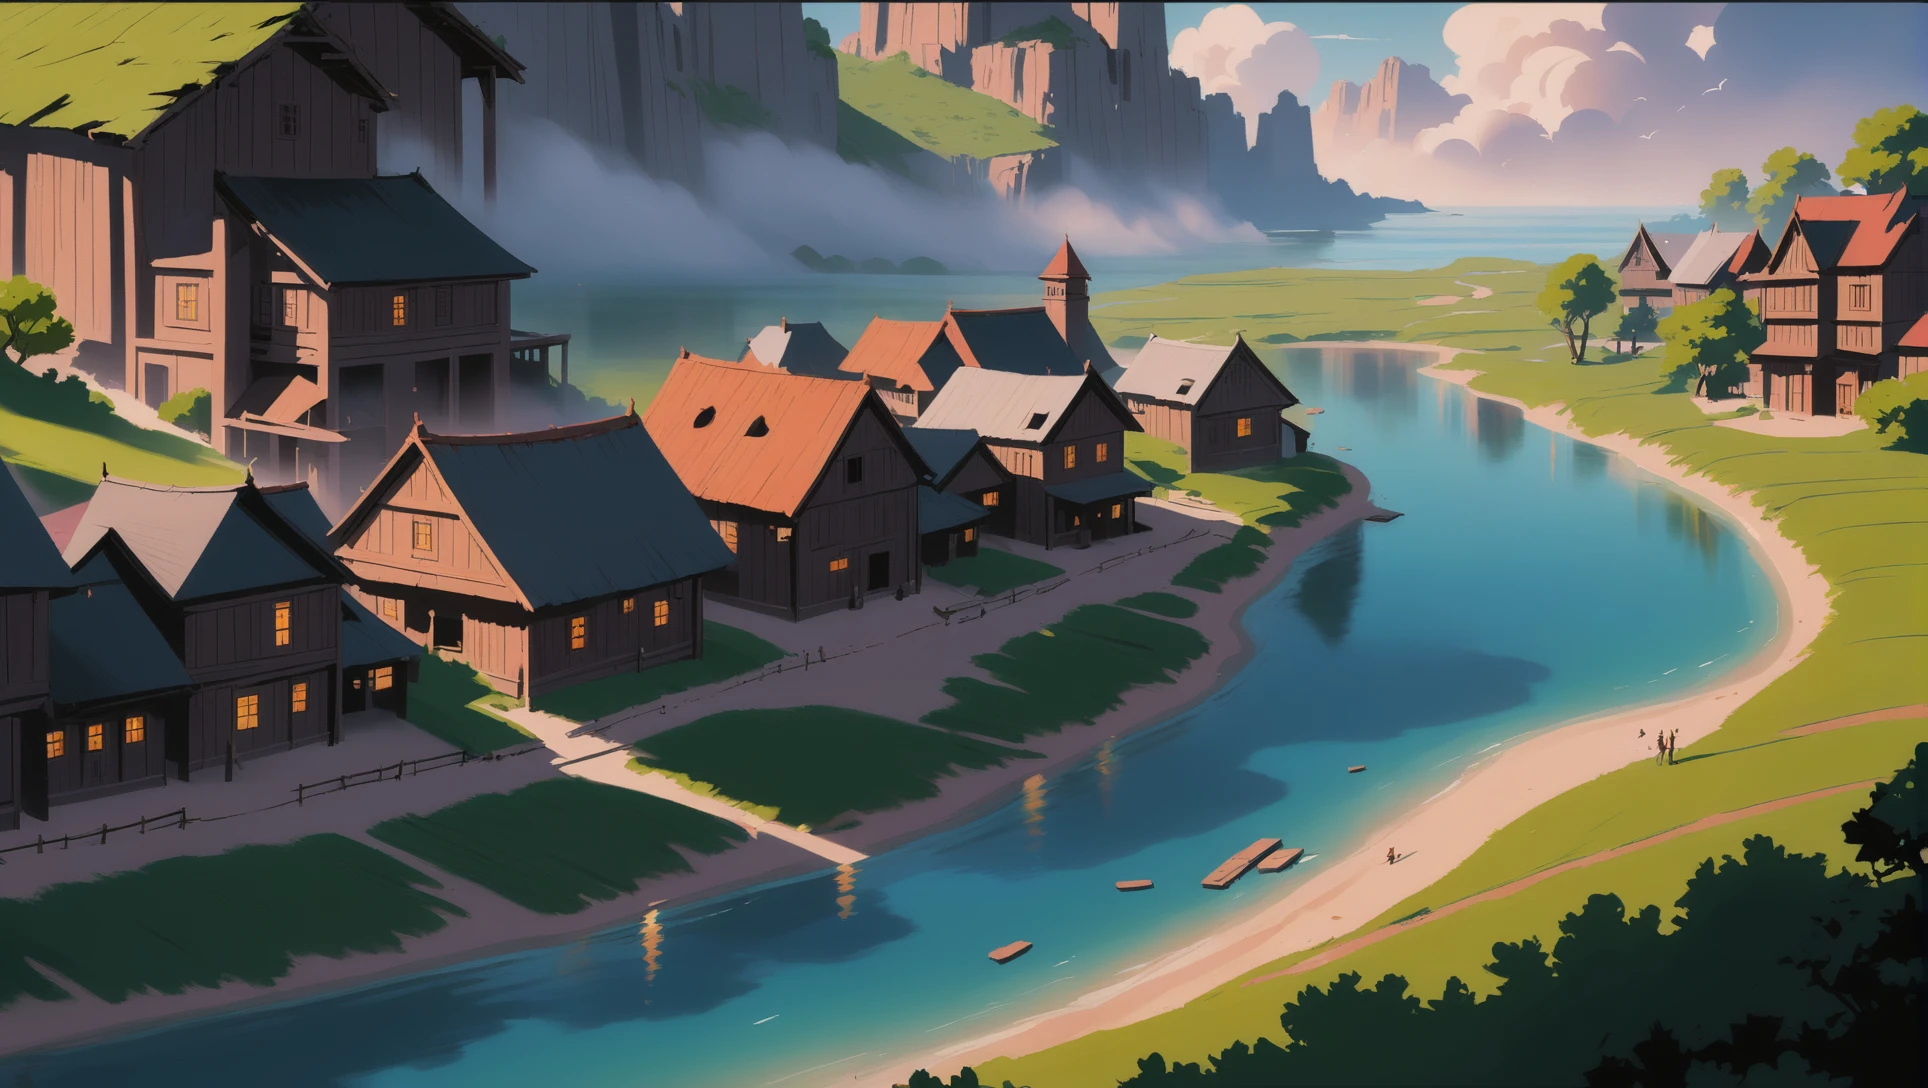 матовая живопись в стиле аниме, Историческая фэнтезийная деревня в конце времен